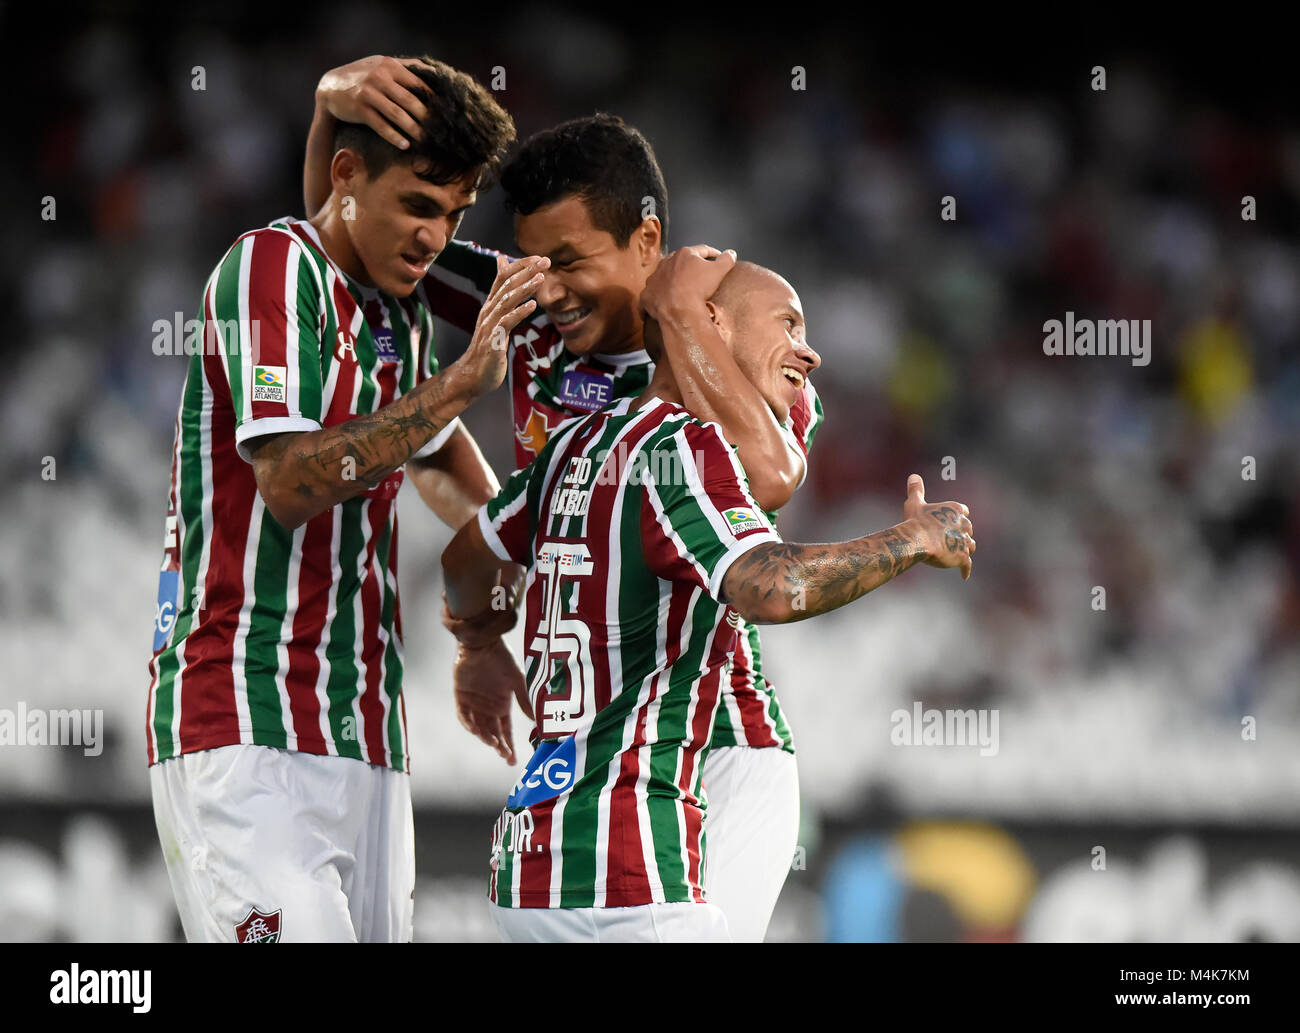 Rio de Janeiro - Brésil , match de foot entre Fluminense et Salgueiro dans le championnat national de soccer du Brésil dans le stade Nilton Santos Banque D'Images